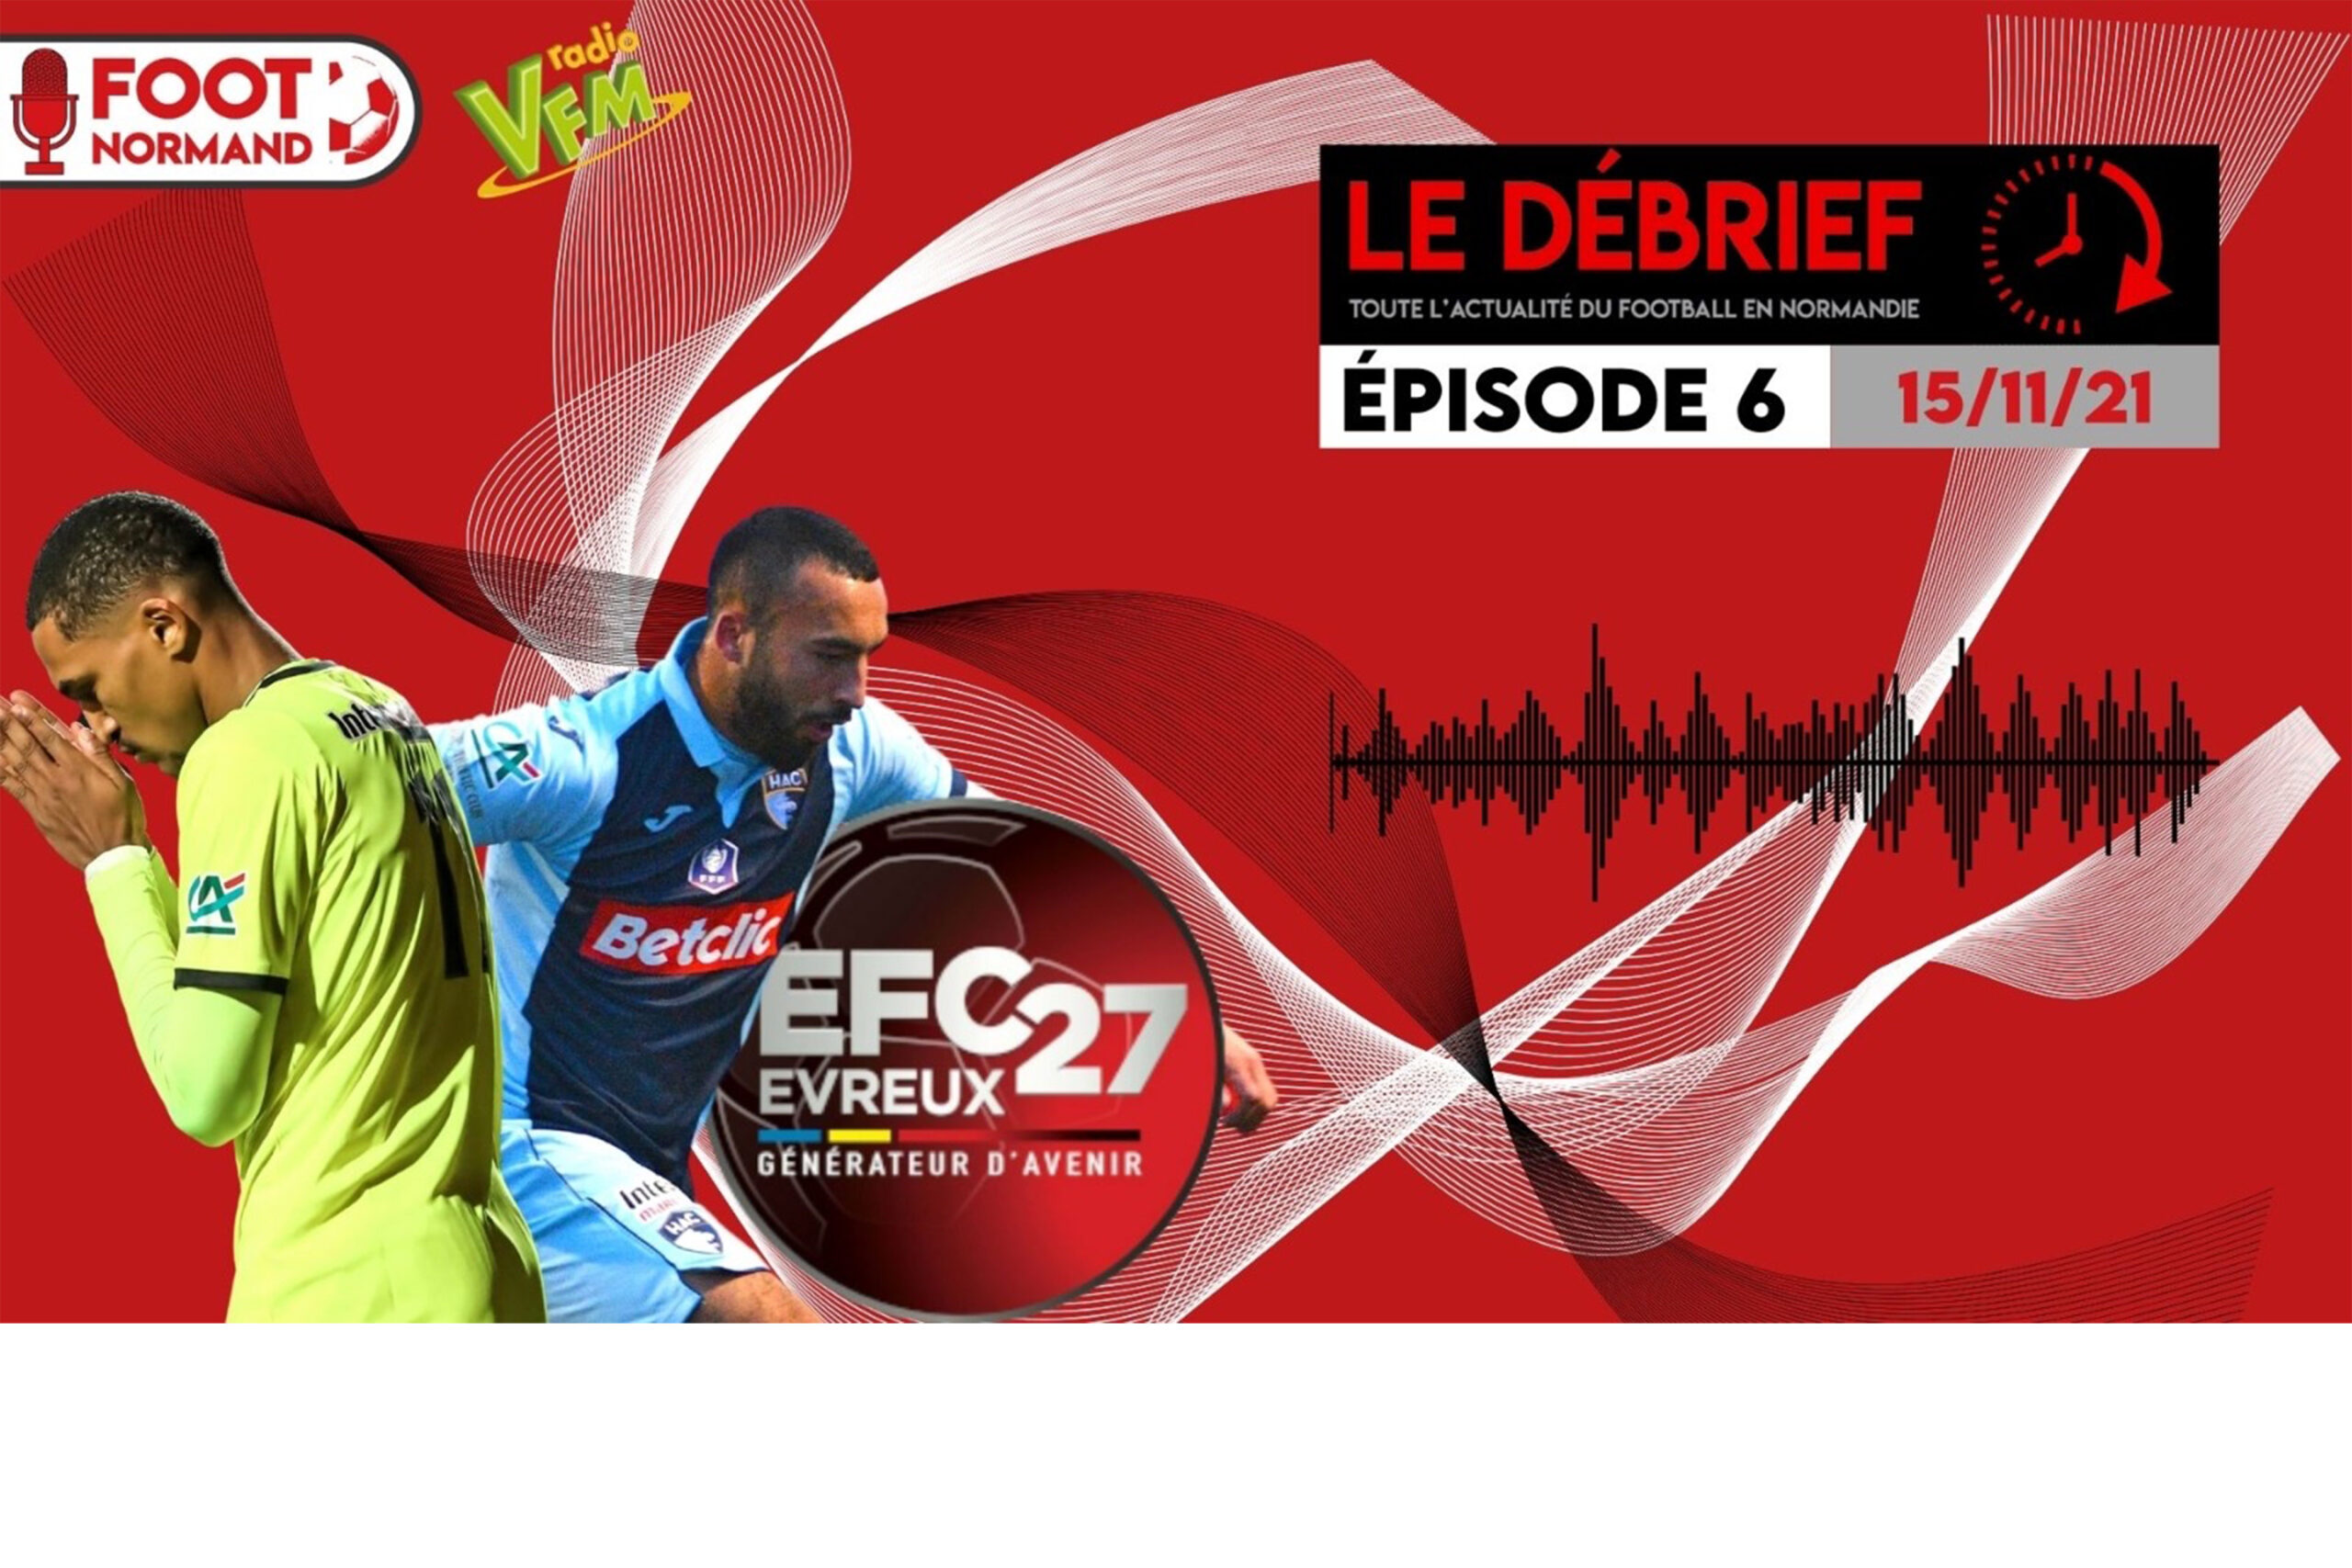 Meneur de jeu de l'Evreux FC 27 qualifié pour le 8e tour de la Coupe de France, Jean Gomis est l'invité de la troisième partie du Débrief - Episode 6.